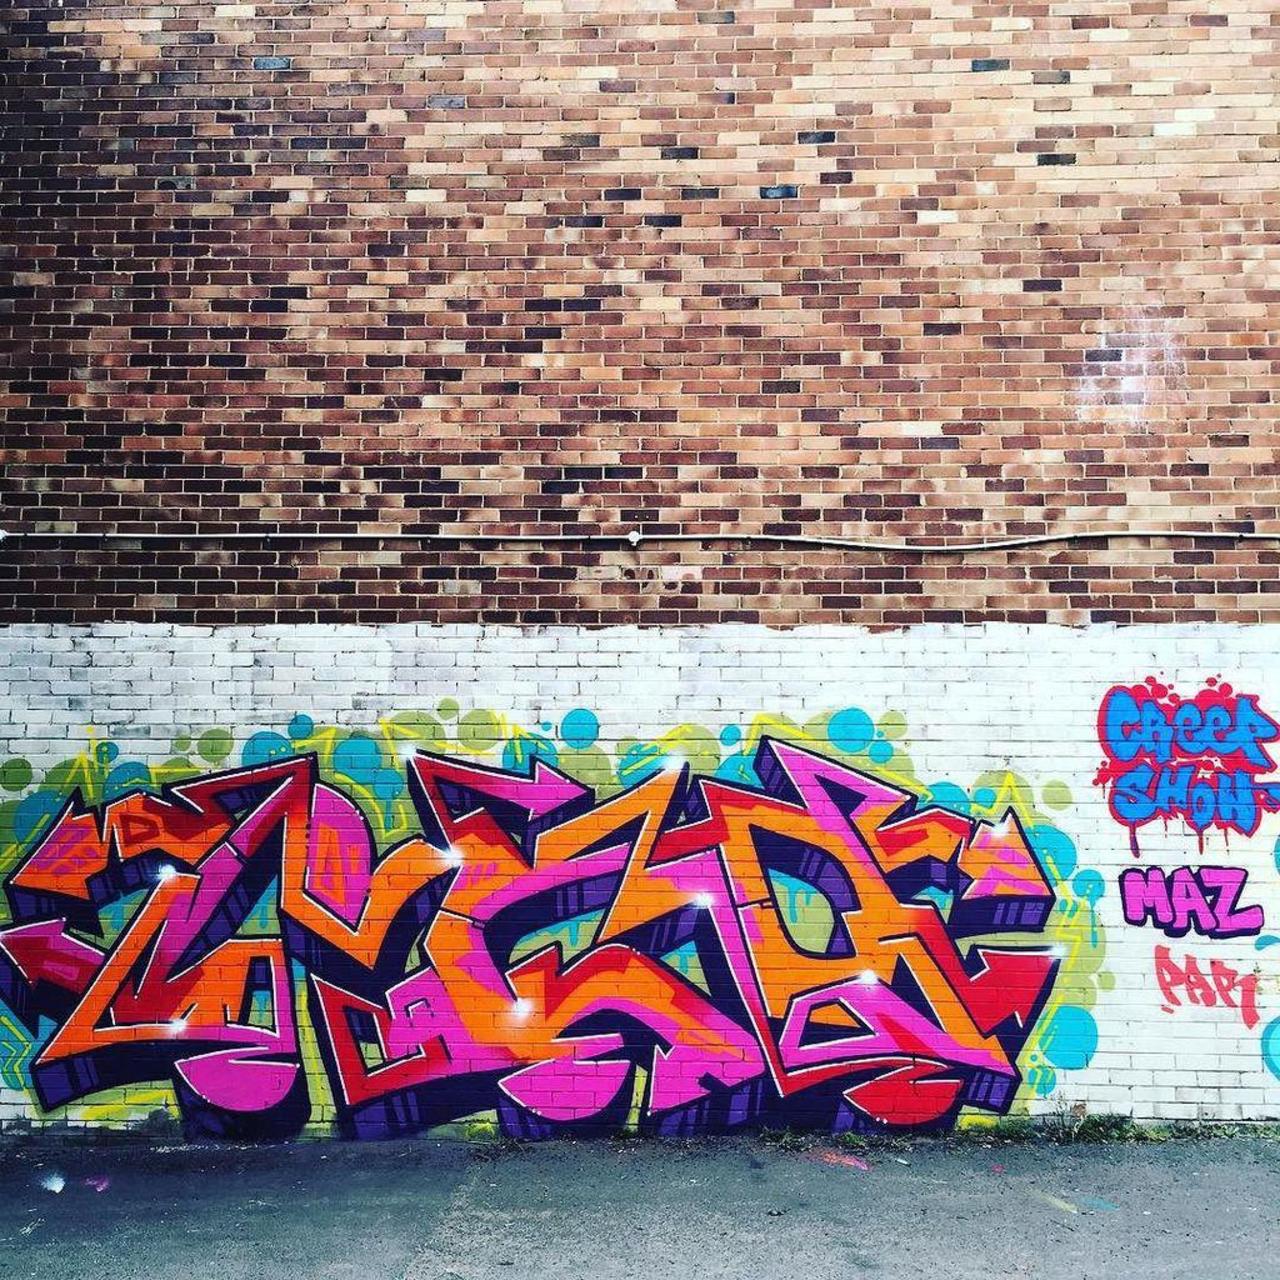 RT @artpushr: via #ipaulie "http://bit.ly/1NfFZjR" #graffiti #streetart http://t.co/JJXn2bnvKj